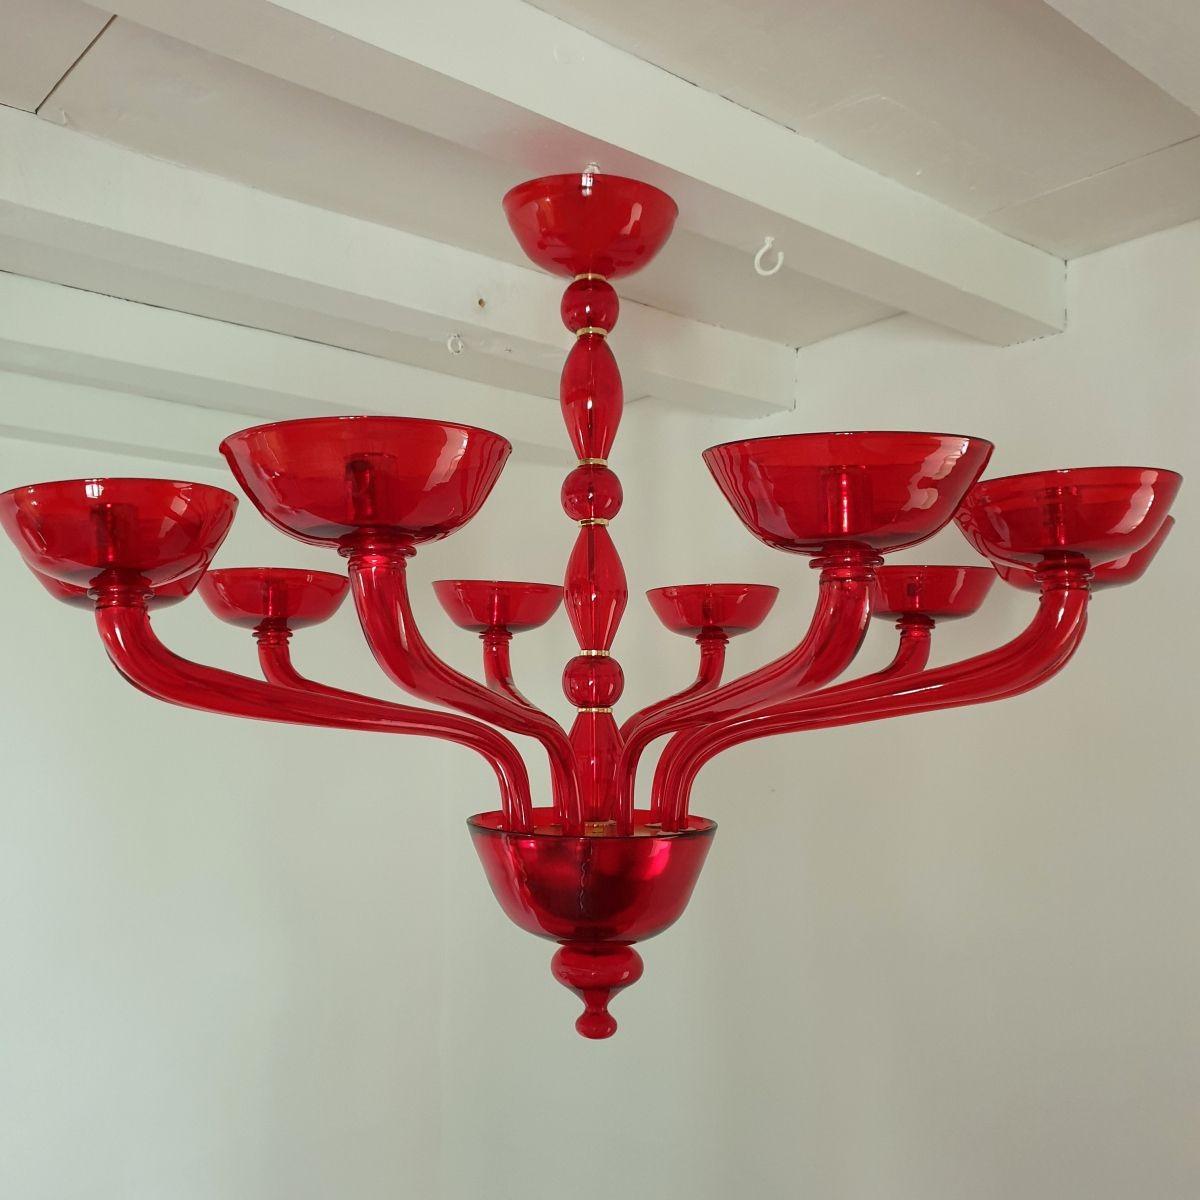 Grand lustre rouge en verre de Murano, style Venini, Italie, années 1980.
Lustre en verre de Murano rouge carmin brillant, avec des montures plaquées or.
Le lustre de style néoclassique comporte dix bras et lumières et est professionnellement câblé